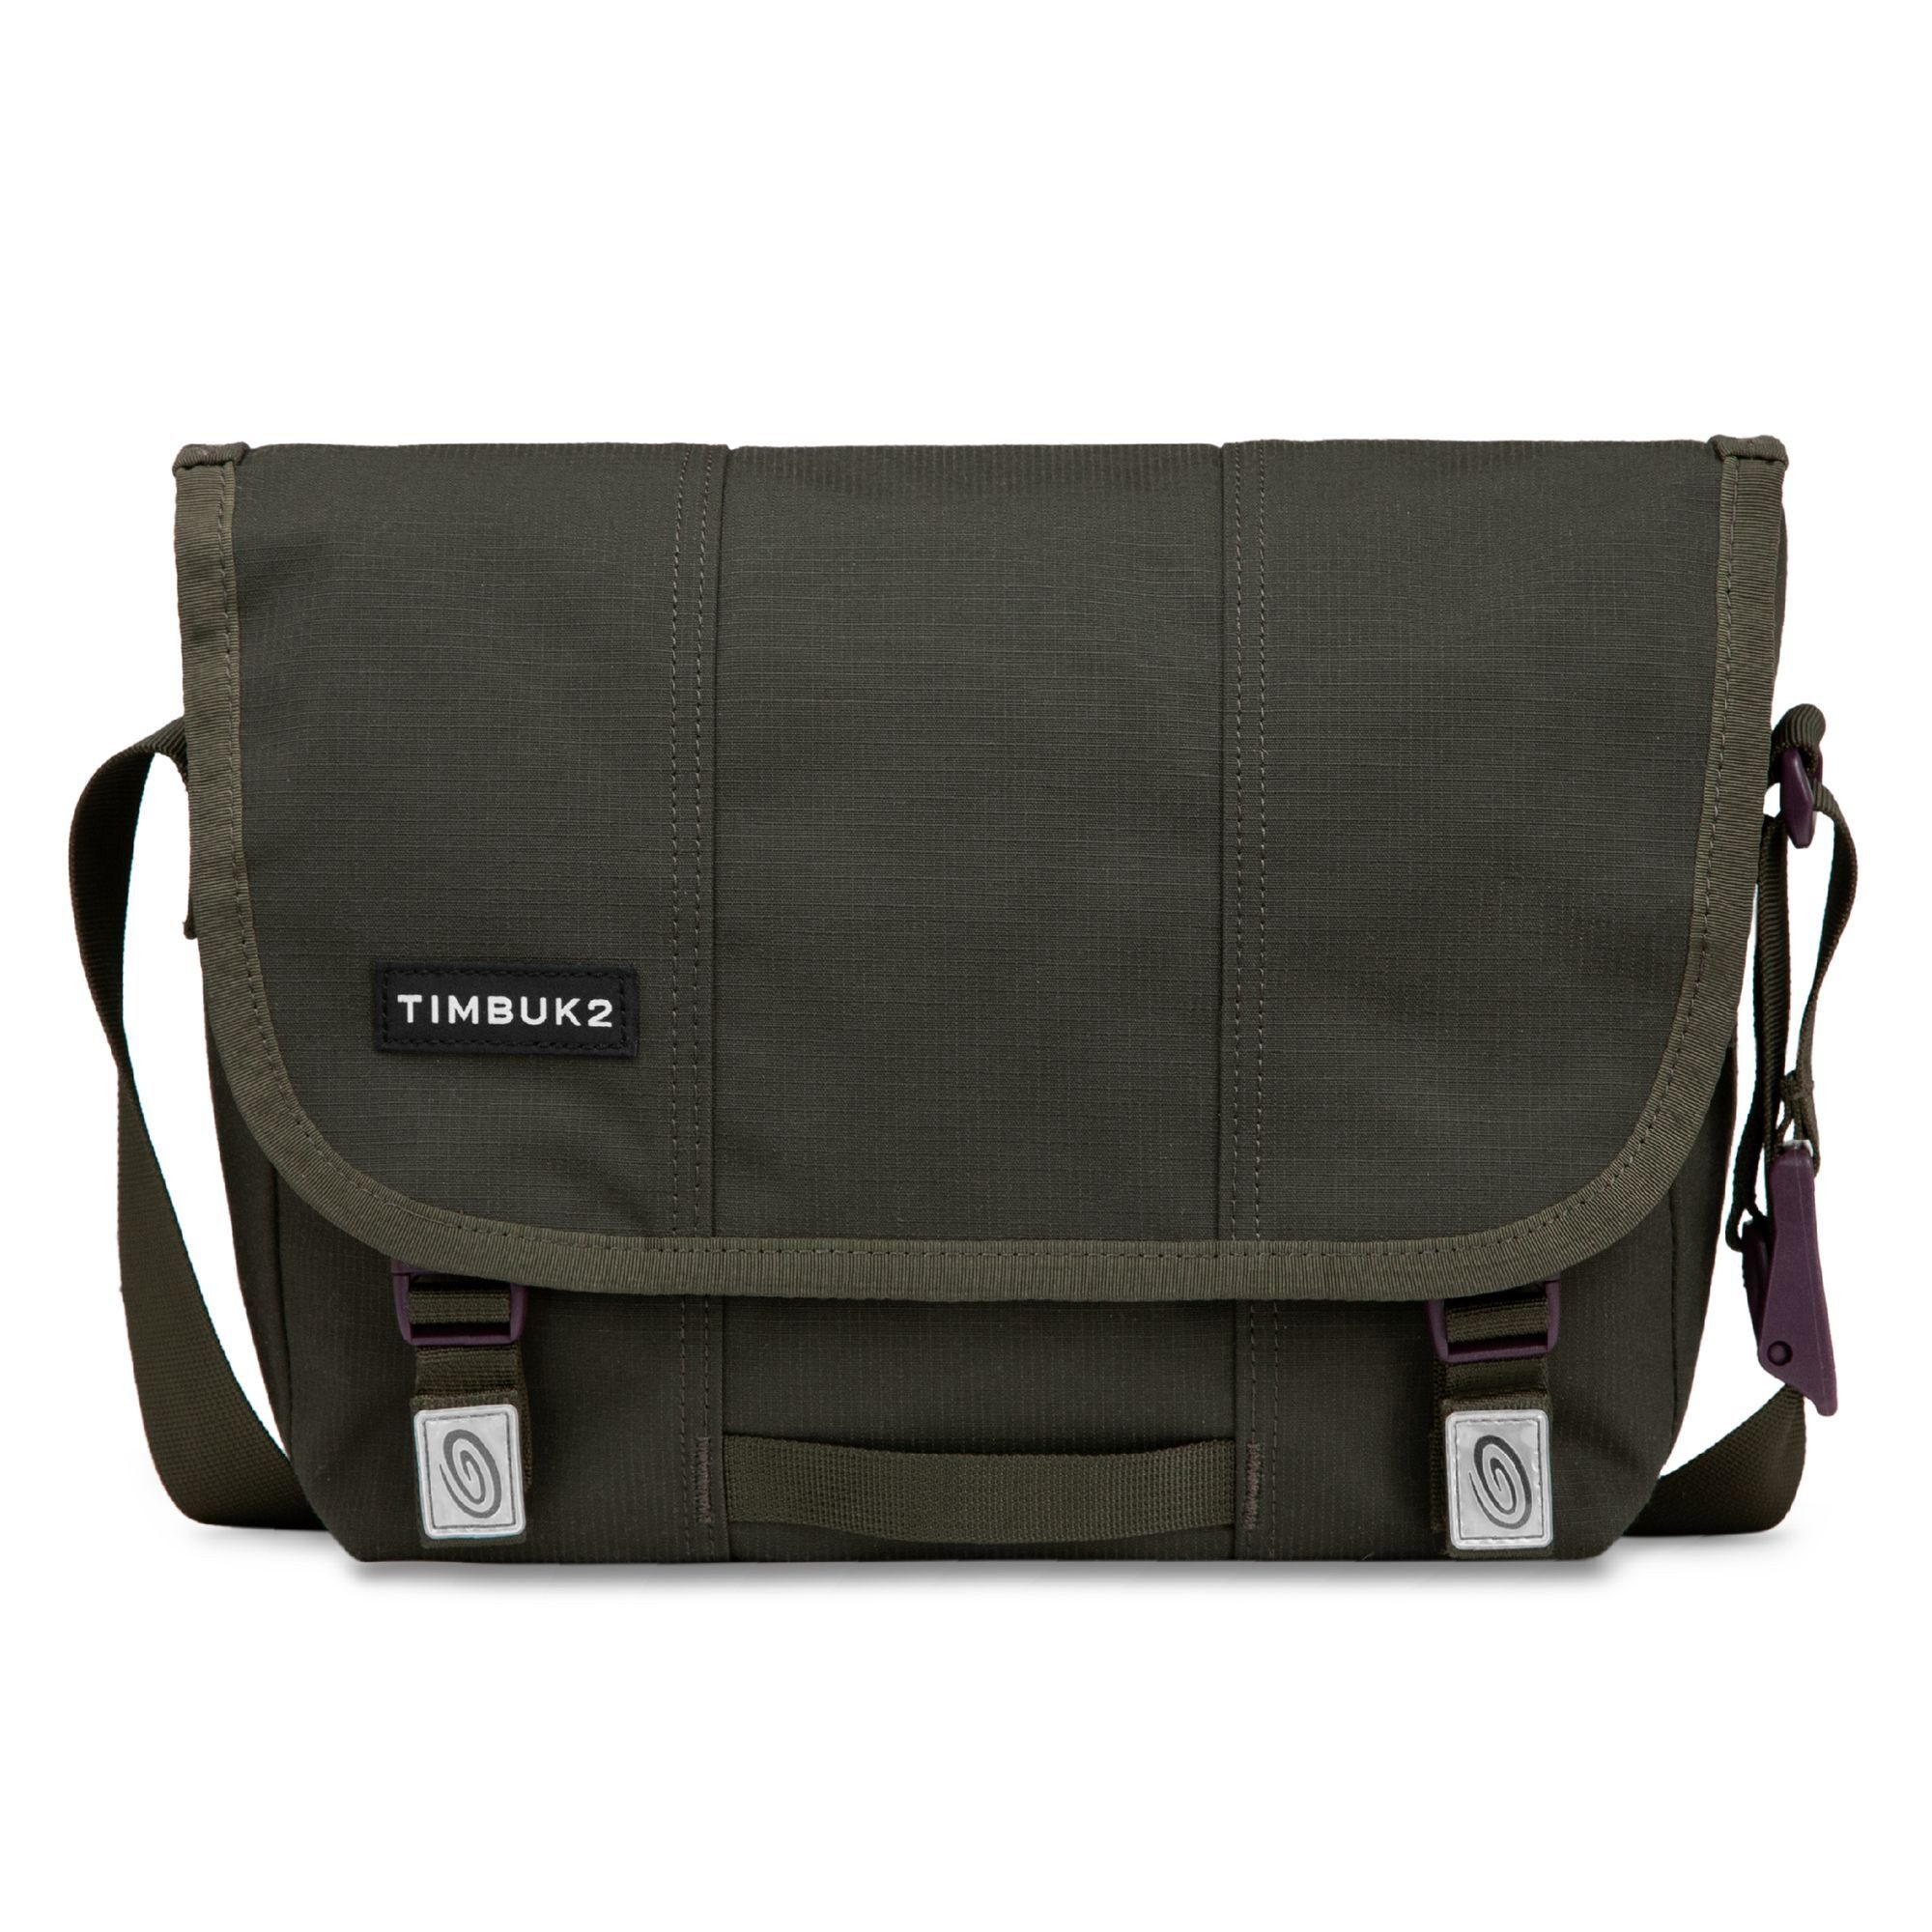 Timbuk2 Messenger Bag Heritage, Polyester